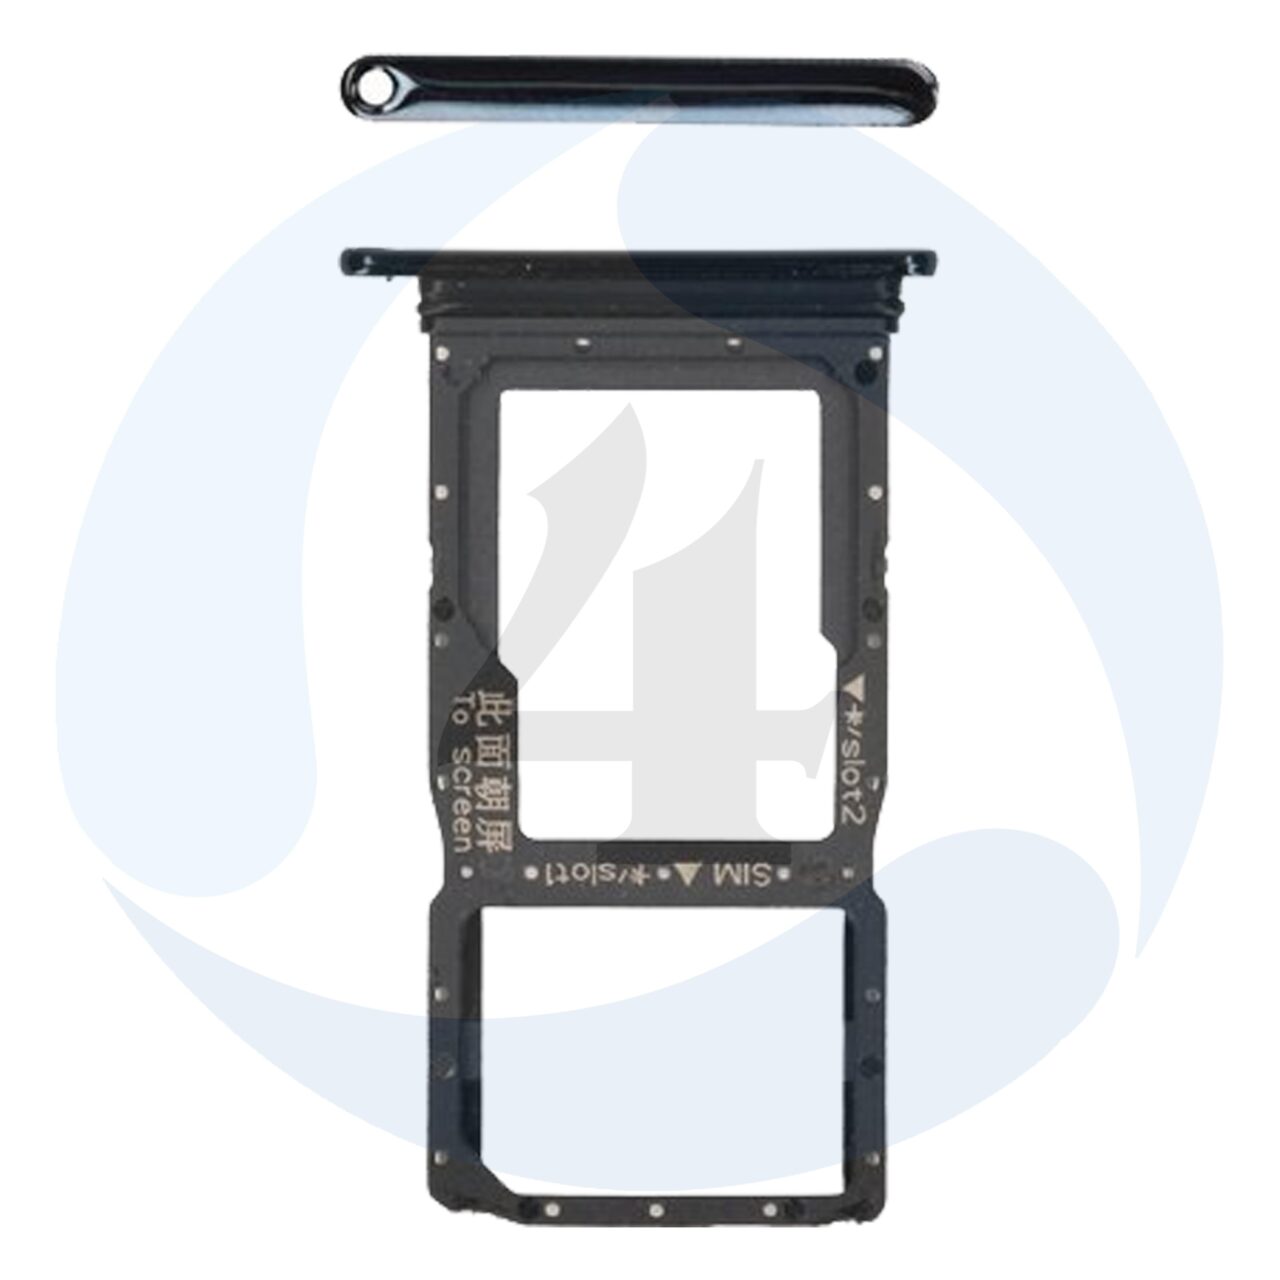 Huawei p smart Z sim tray black